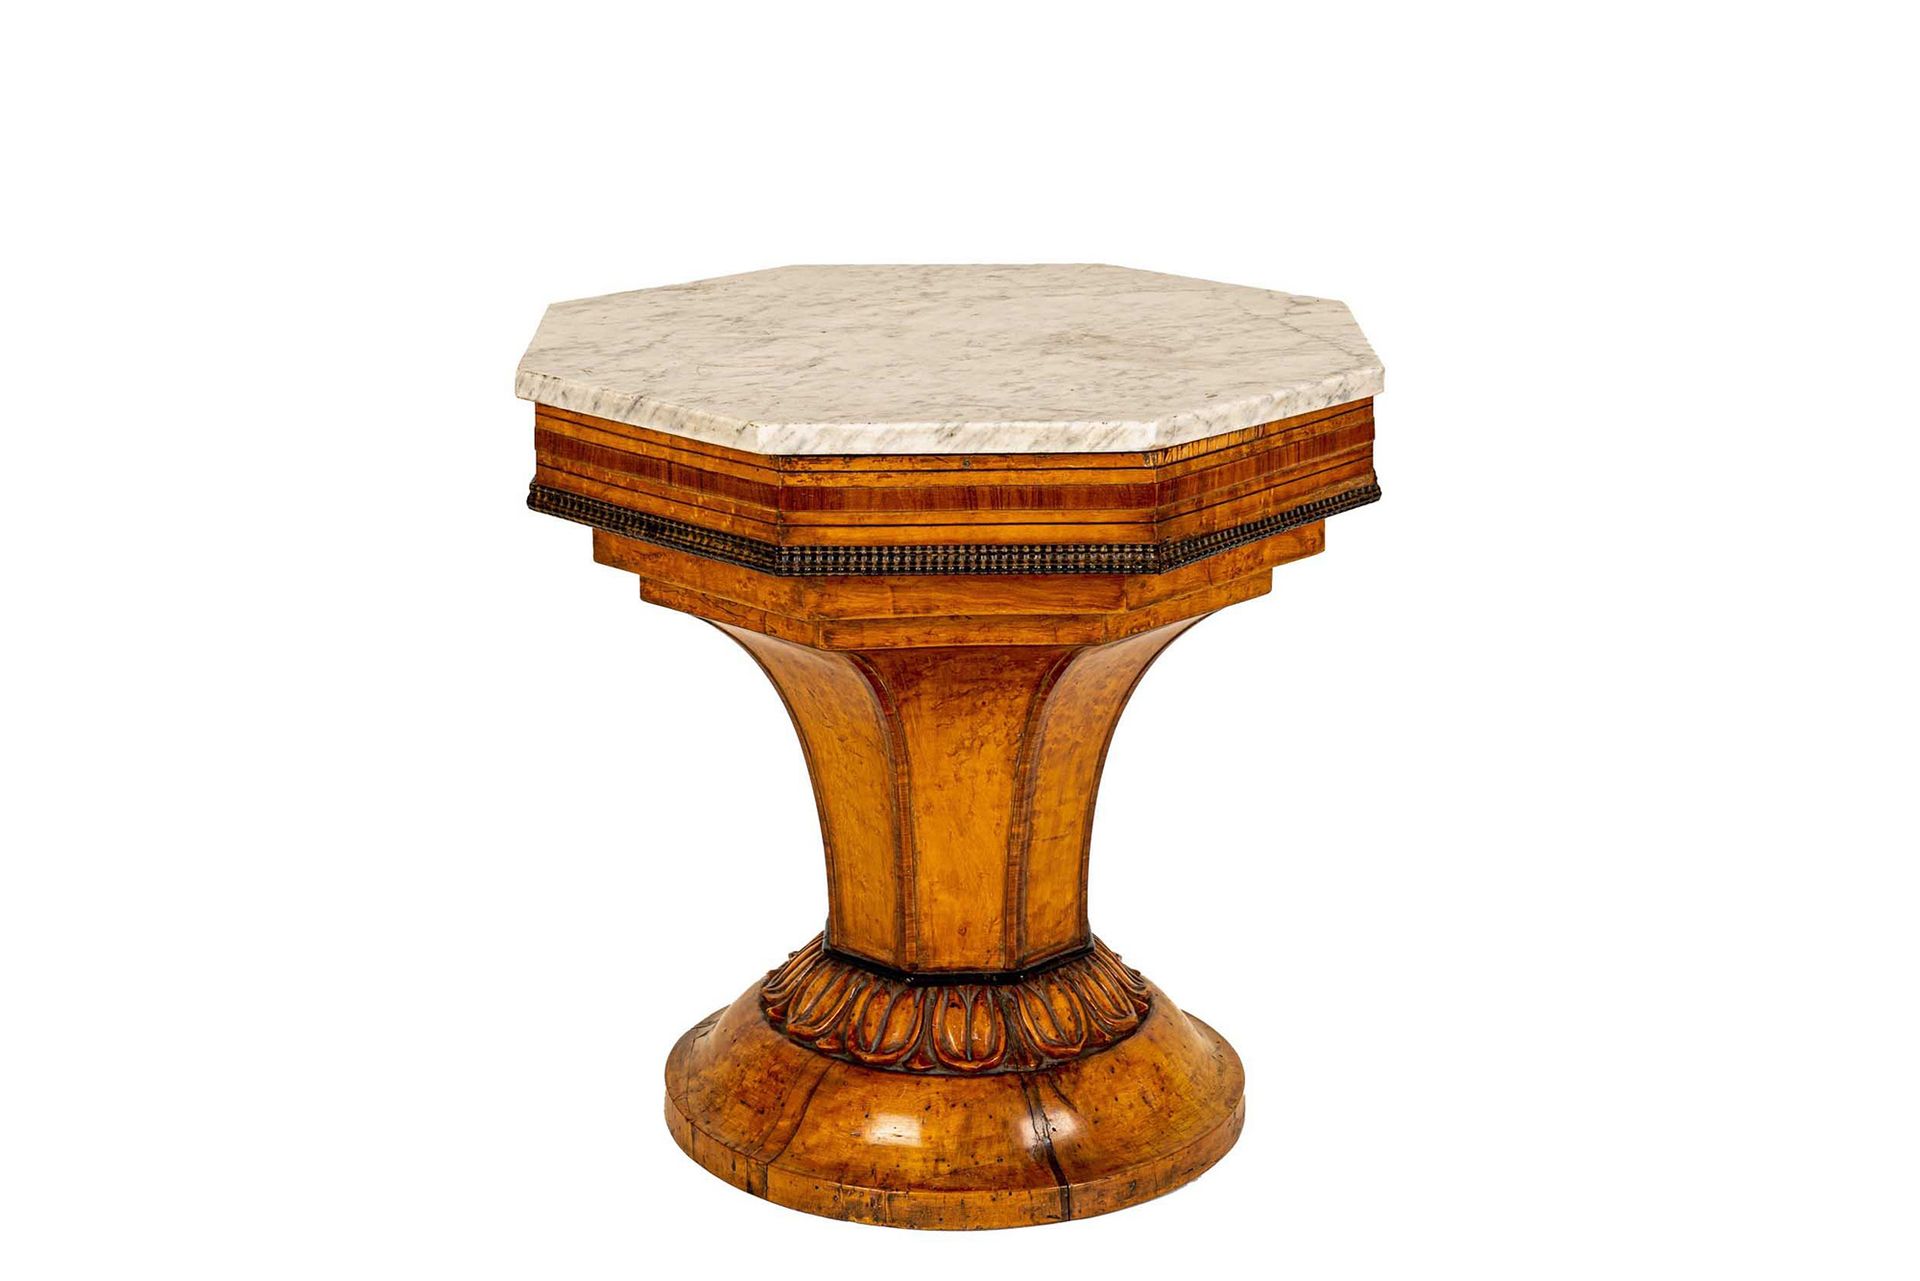 Null 低矮的中心桌

西西里岛查理十世时期，约1830年

金色桃花心木，镶嵌白色大理石面板

直径37厘米，高56厘米